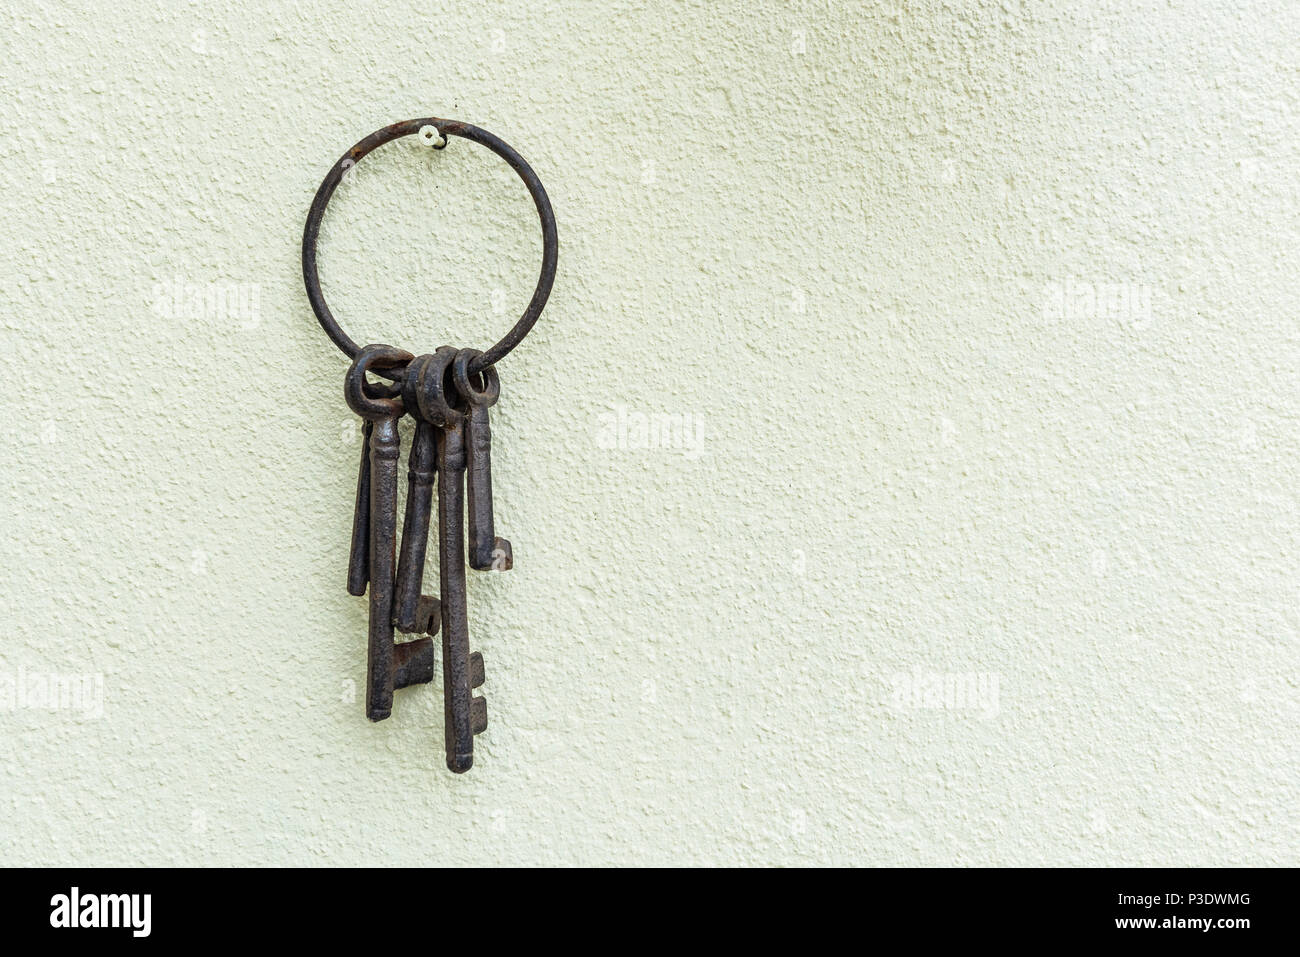 Rostige alte Schlüssel hängen an einer Creme texturierte Wand. Korrodierte Schlüsselanhänger aus Metall und Tasten. Stockfoto